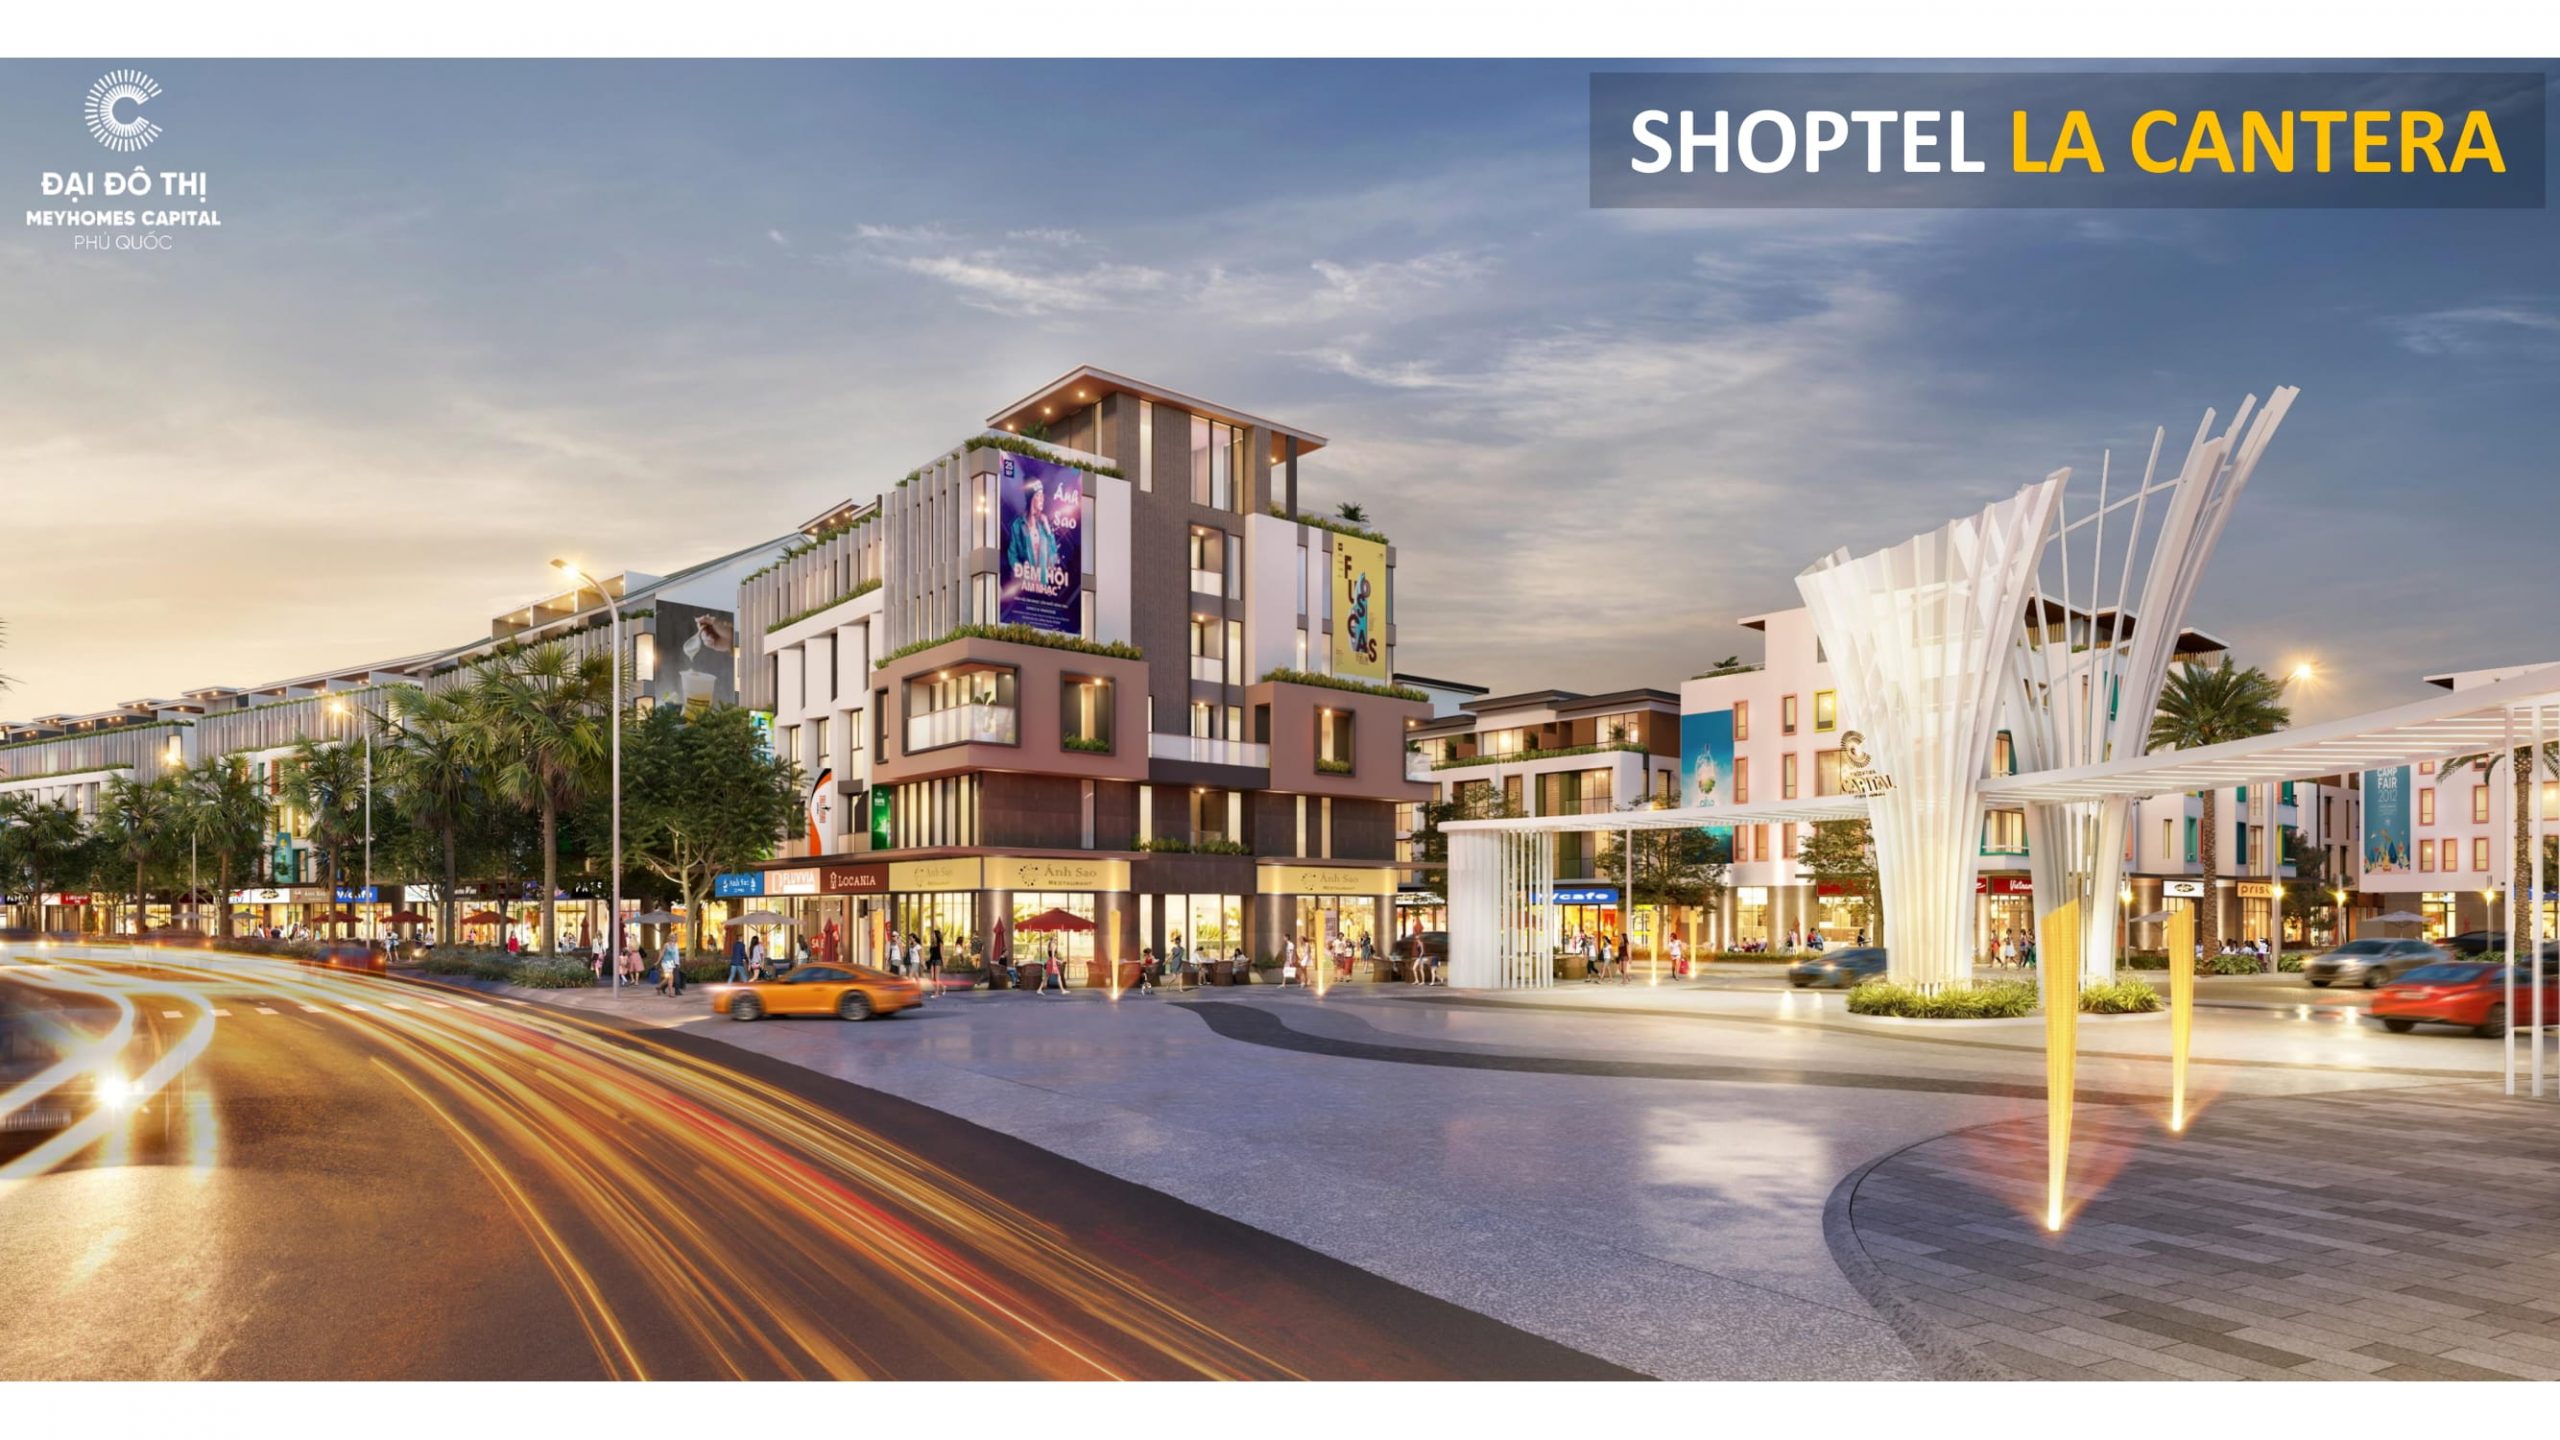 Shoptel La Cantera Meyhomes Capital Phú Quốc hưởng trọn lợi thế từ trào lưu du lịch, mua sắm